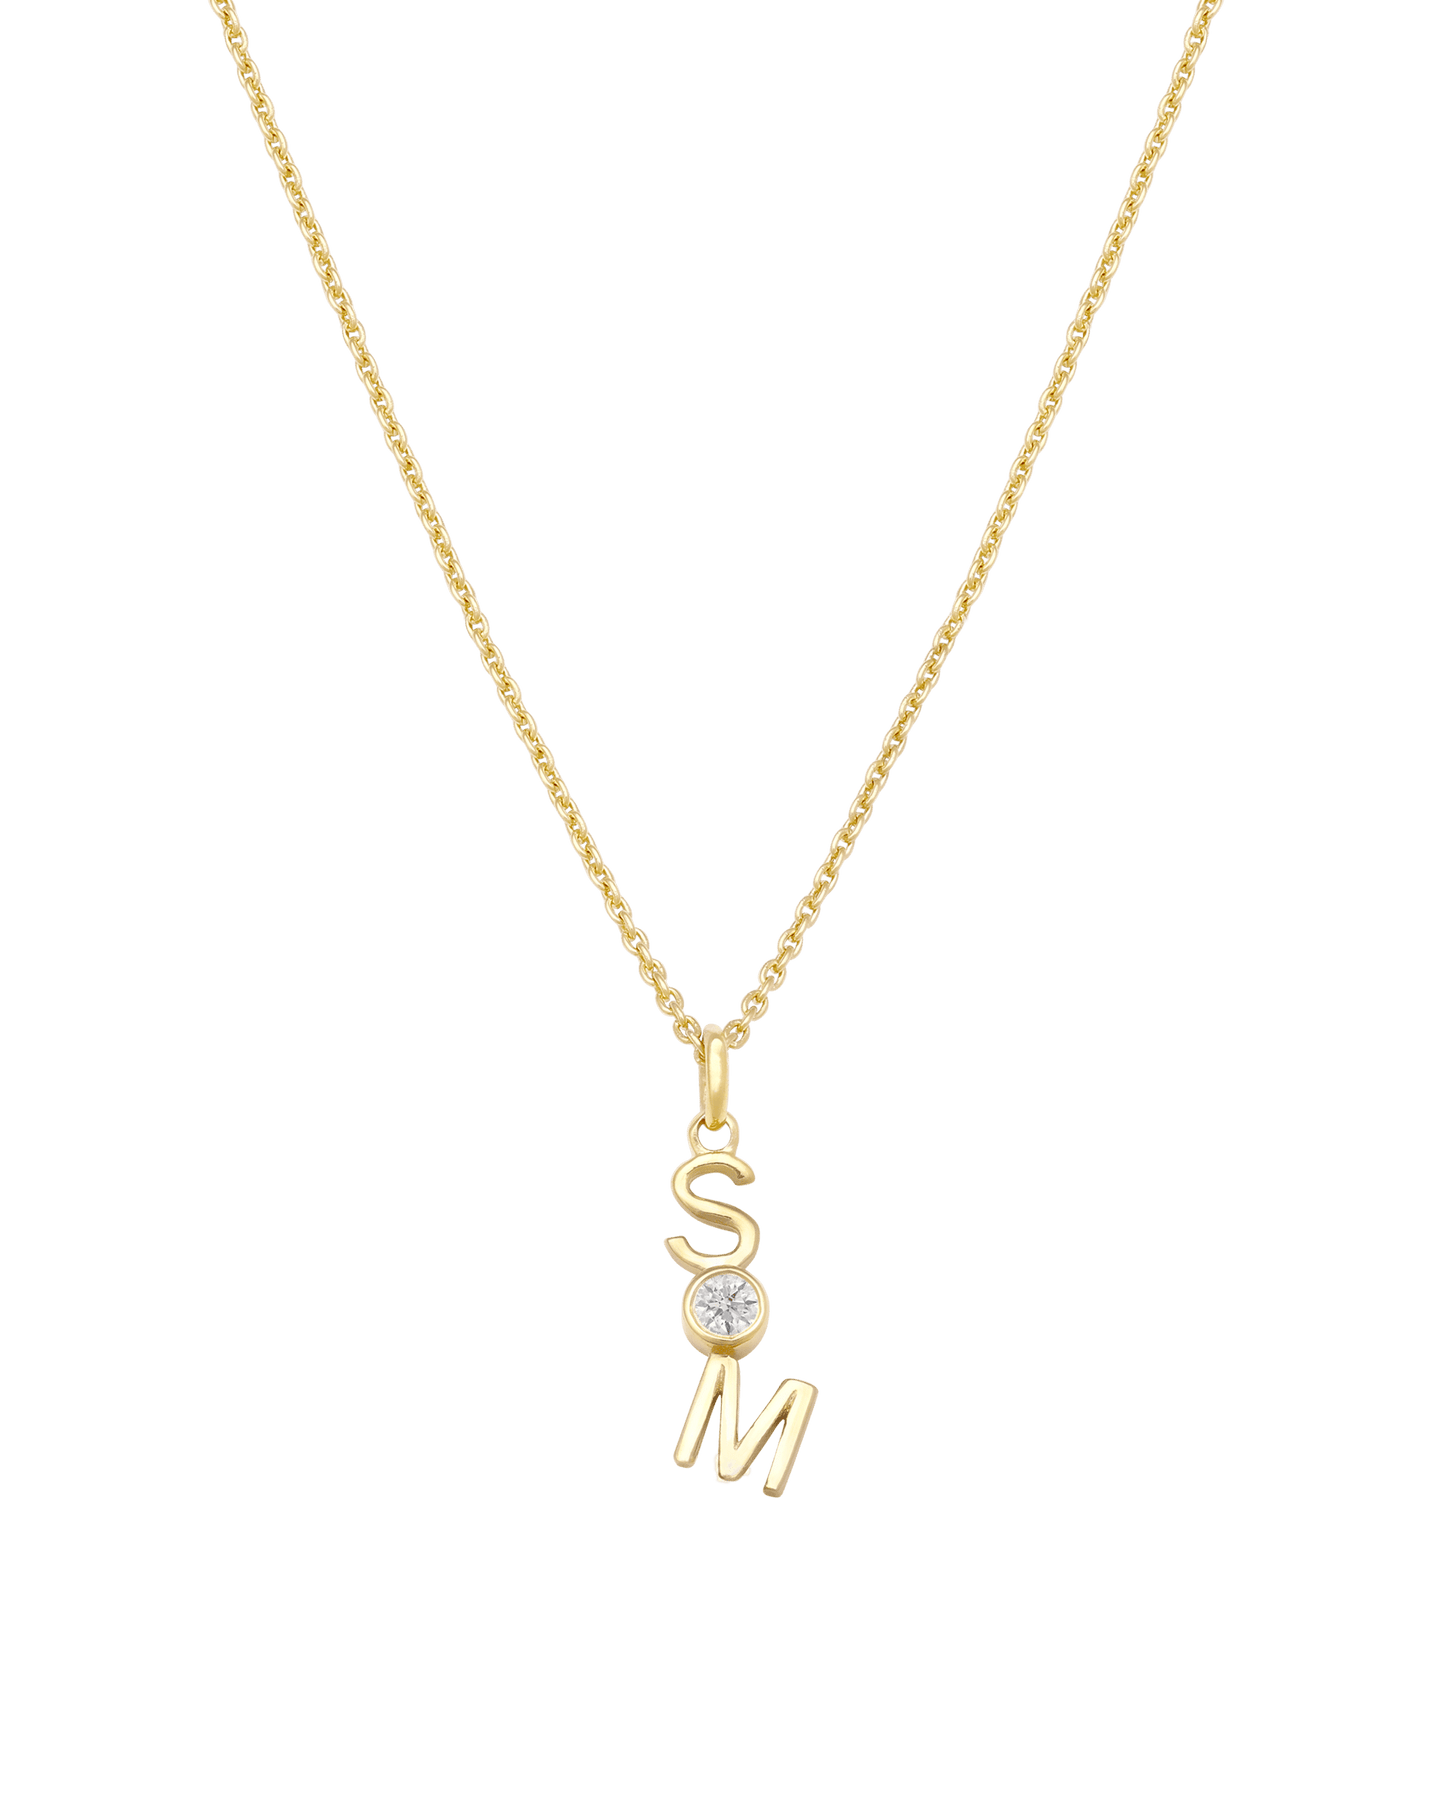 Verti Necklace - 18K Gold Vermeil Necklaces Gold Vermeil 1 Initial + 1 Diamond 14"-16" adjustable 